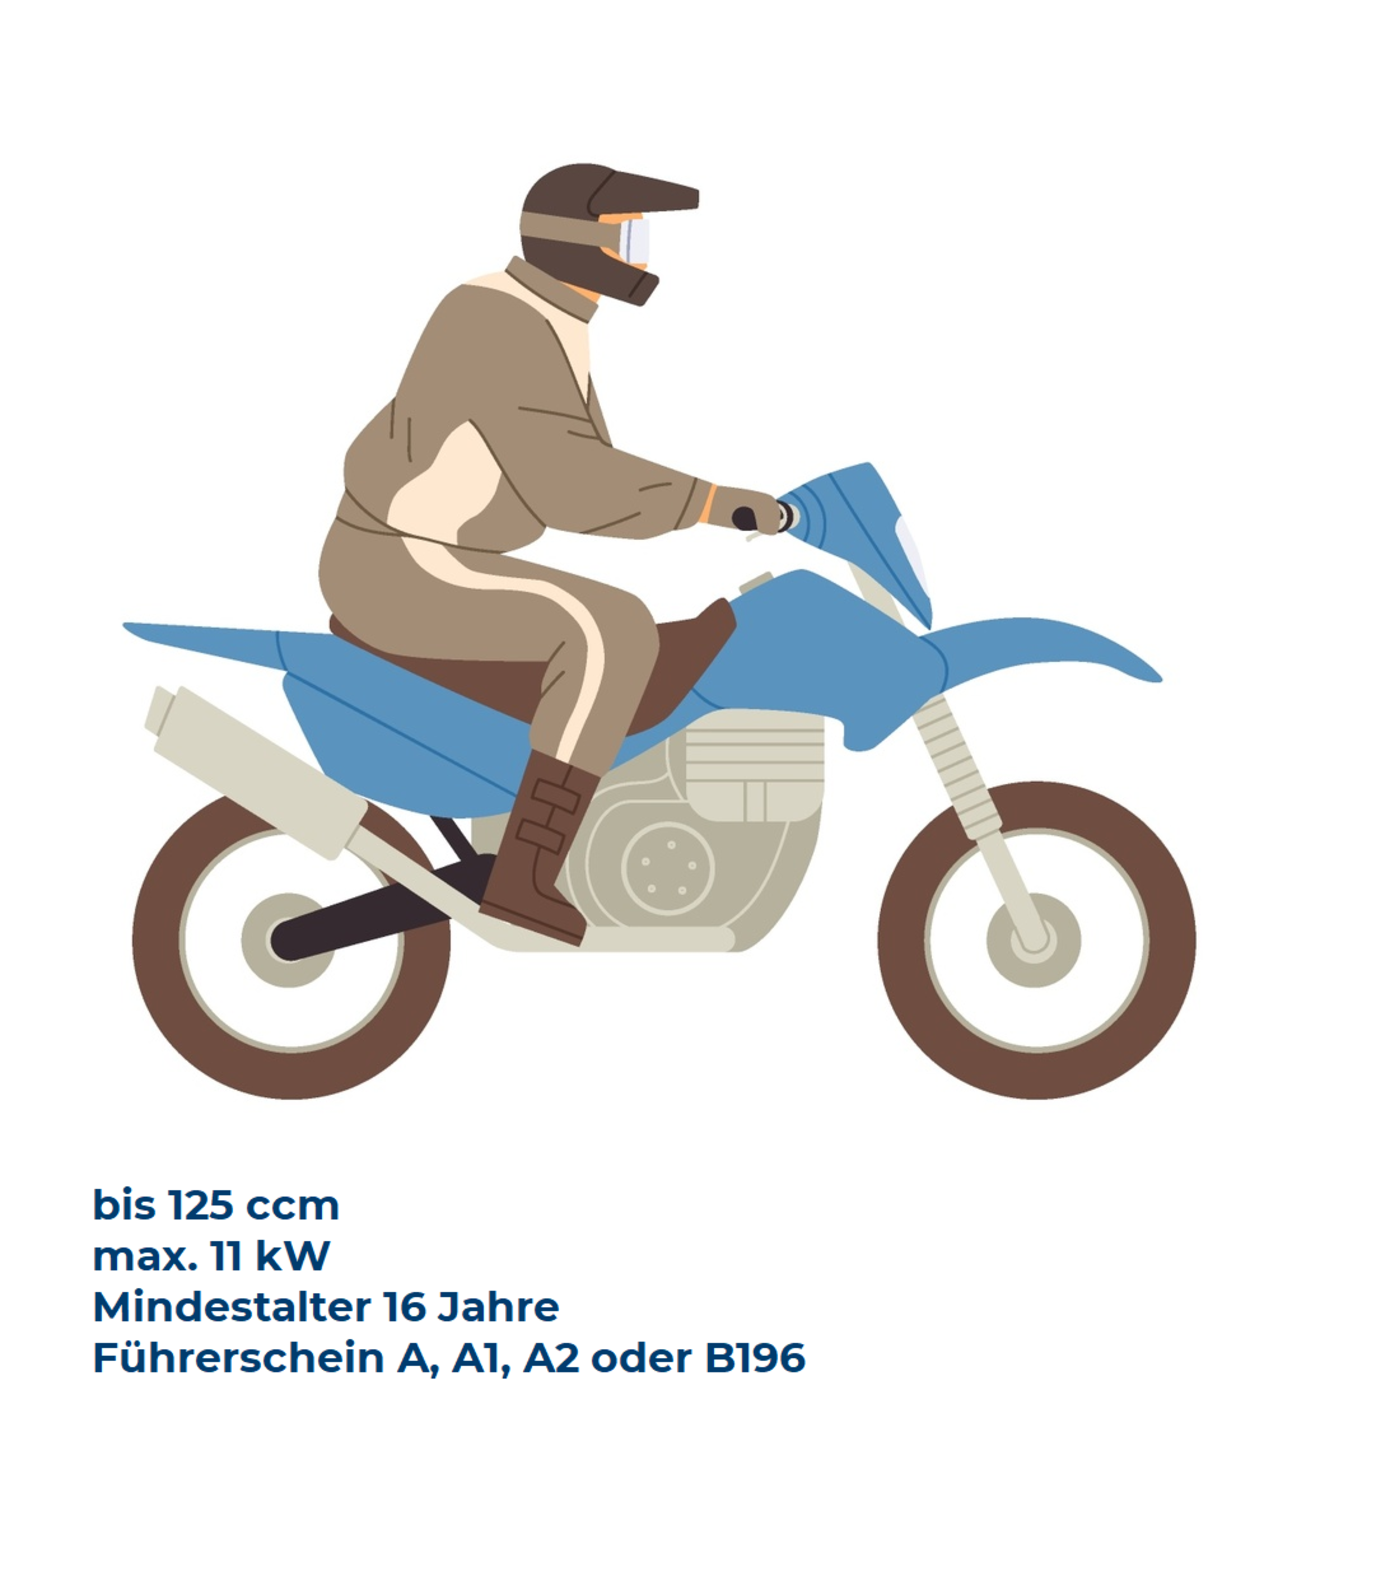 Illustration von einem Motorradfahrer, der auf einem Leichtkraftrad sitzt